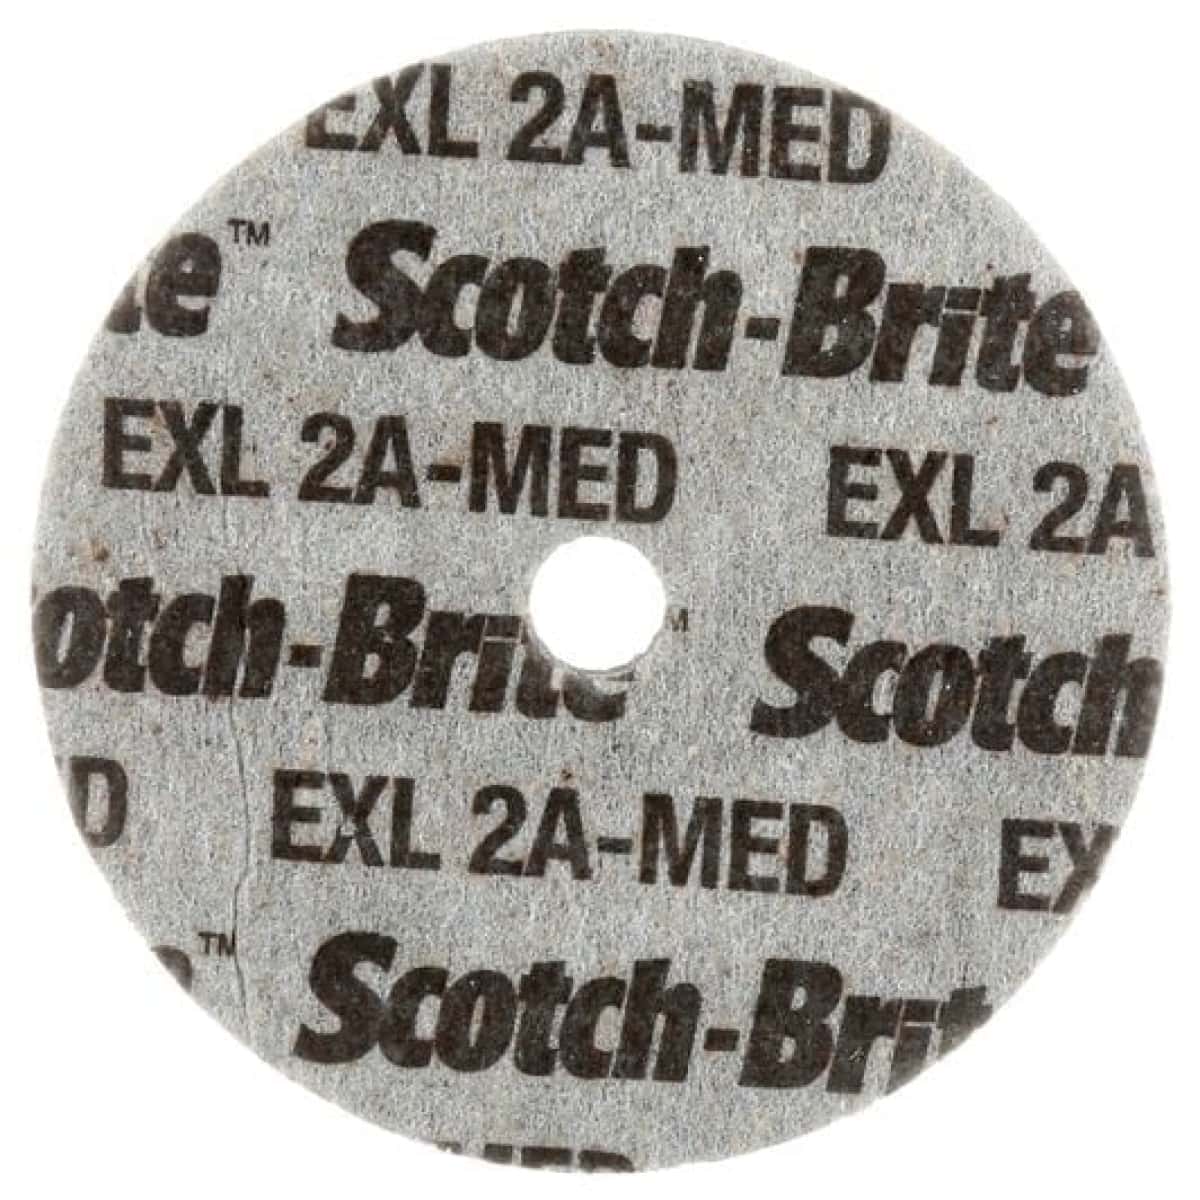 3M™ Scotch-Brite™ EXL XL-UW 188388, Ø 76,2 mm x 3,2 mm, ø 9,53 mm, Härte 8, P320 - 500, A, Medium, 18.100 U./Min., Verpresste Kompaktscheibe, Für Entgratungs- und Finisharbeiten